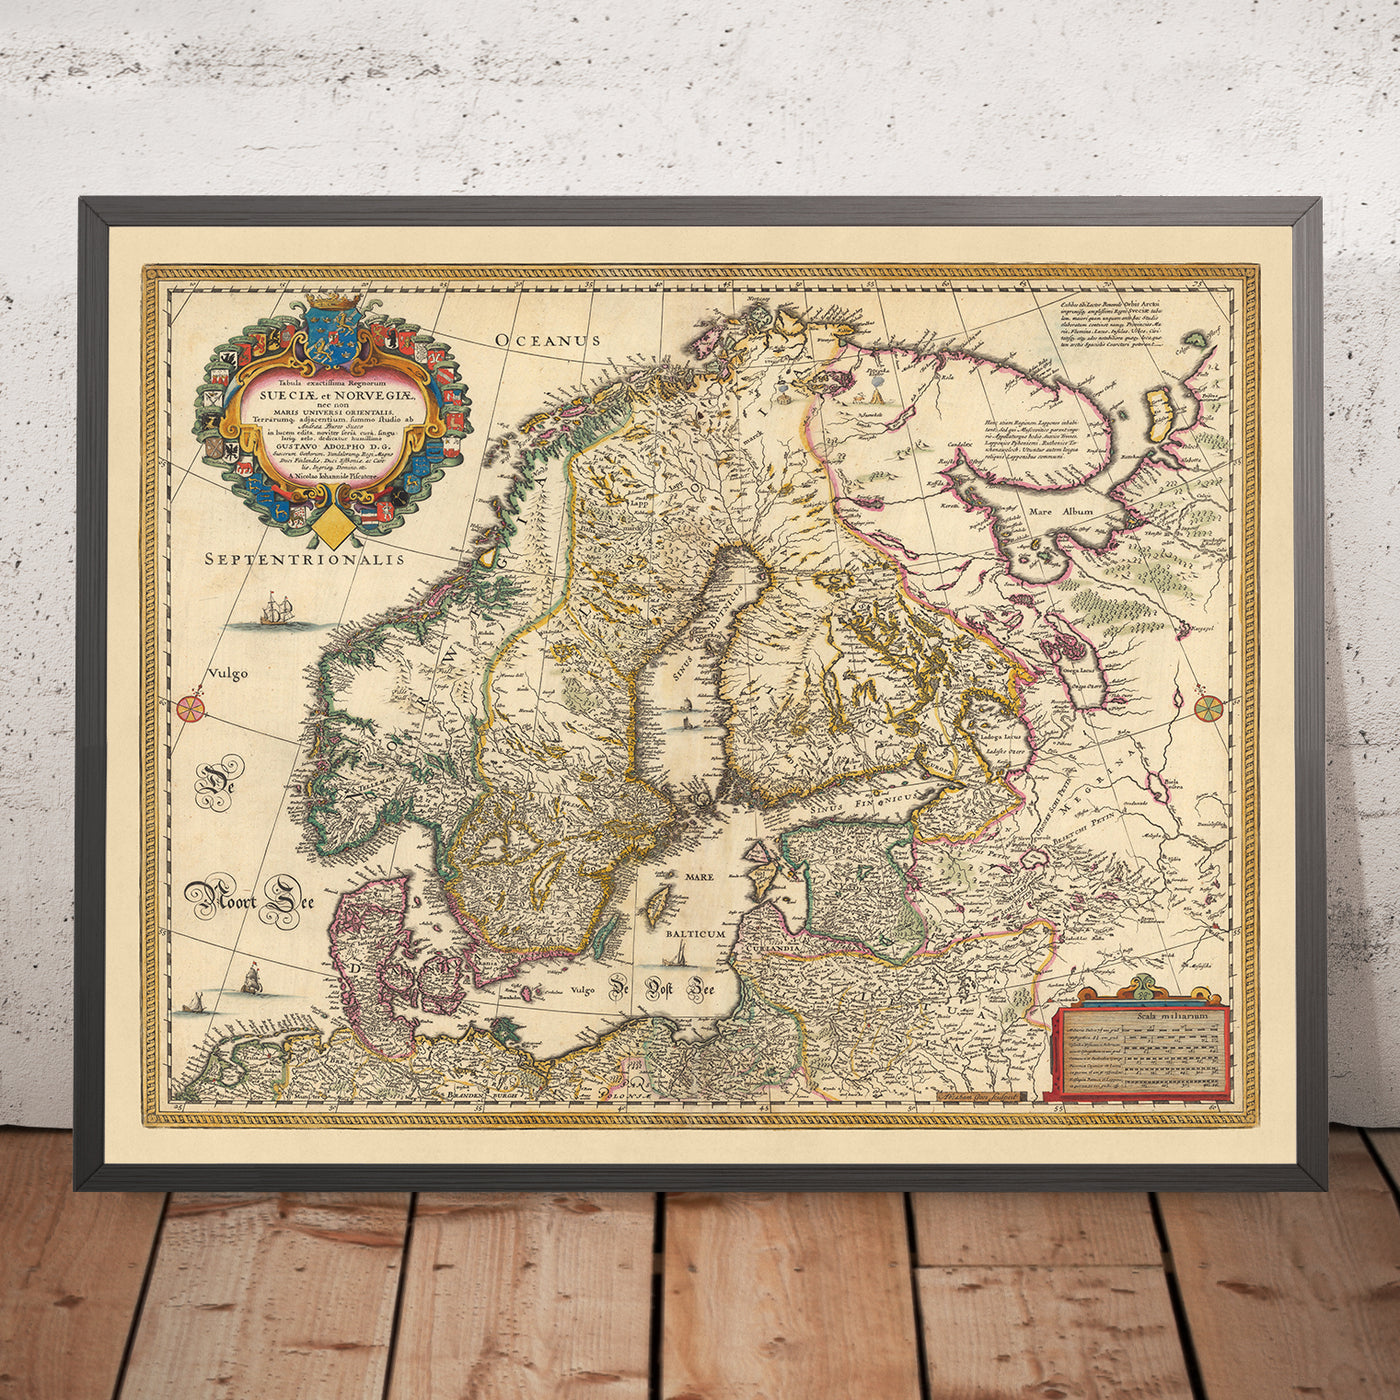 Alte Karte von Skandinavien und Nordeuropa von Visscher, 1690: Oslo, Stockholm, Helsinki, Riga, Kopenhagen